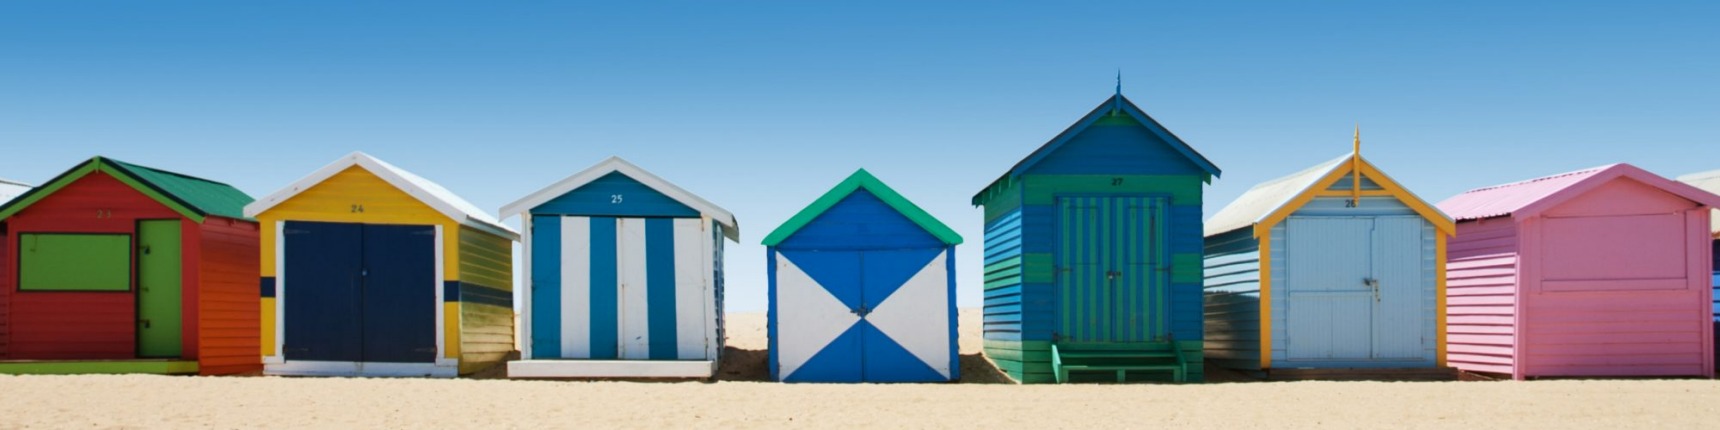 melbourne brighton beach huts